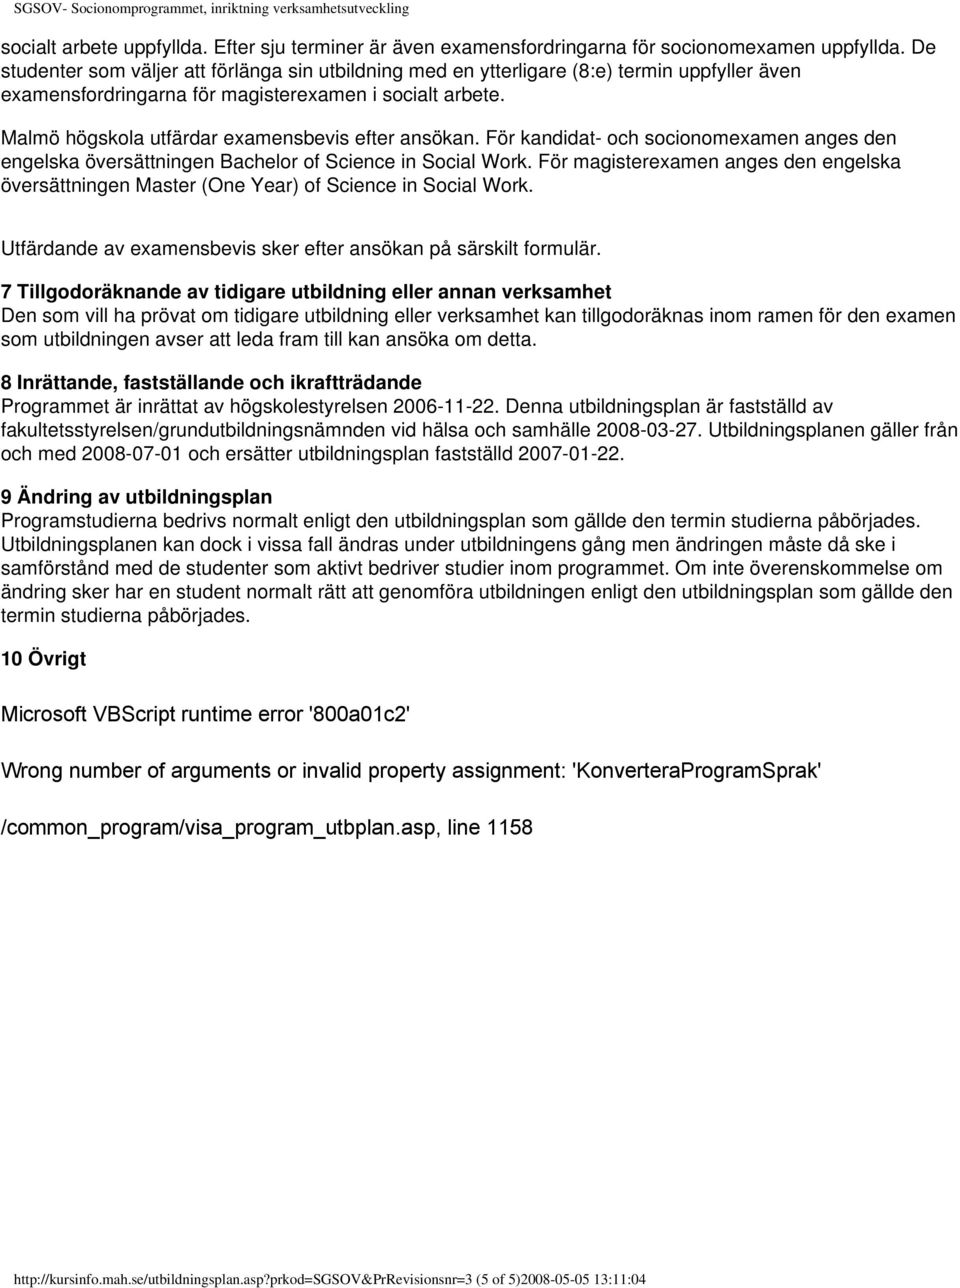 Malmö högskola utfärdar examensbevis efter ansökan. För kandidat- och socionomexamen anges den engelska översättningen Bachelor of Science in Social Work.